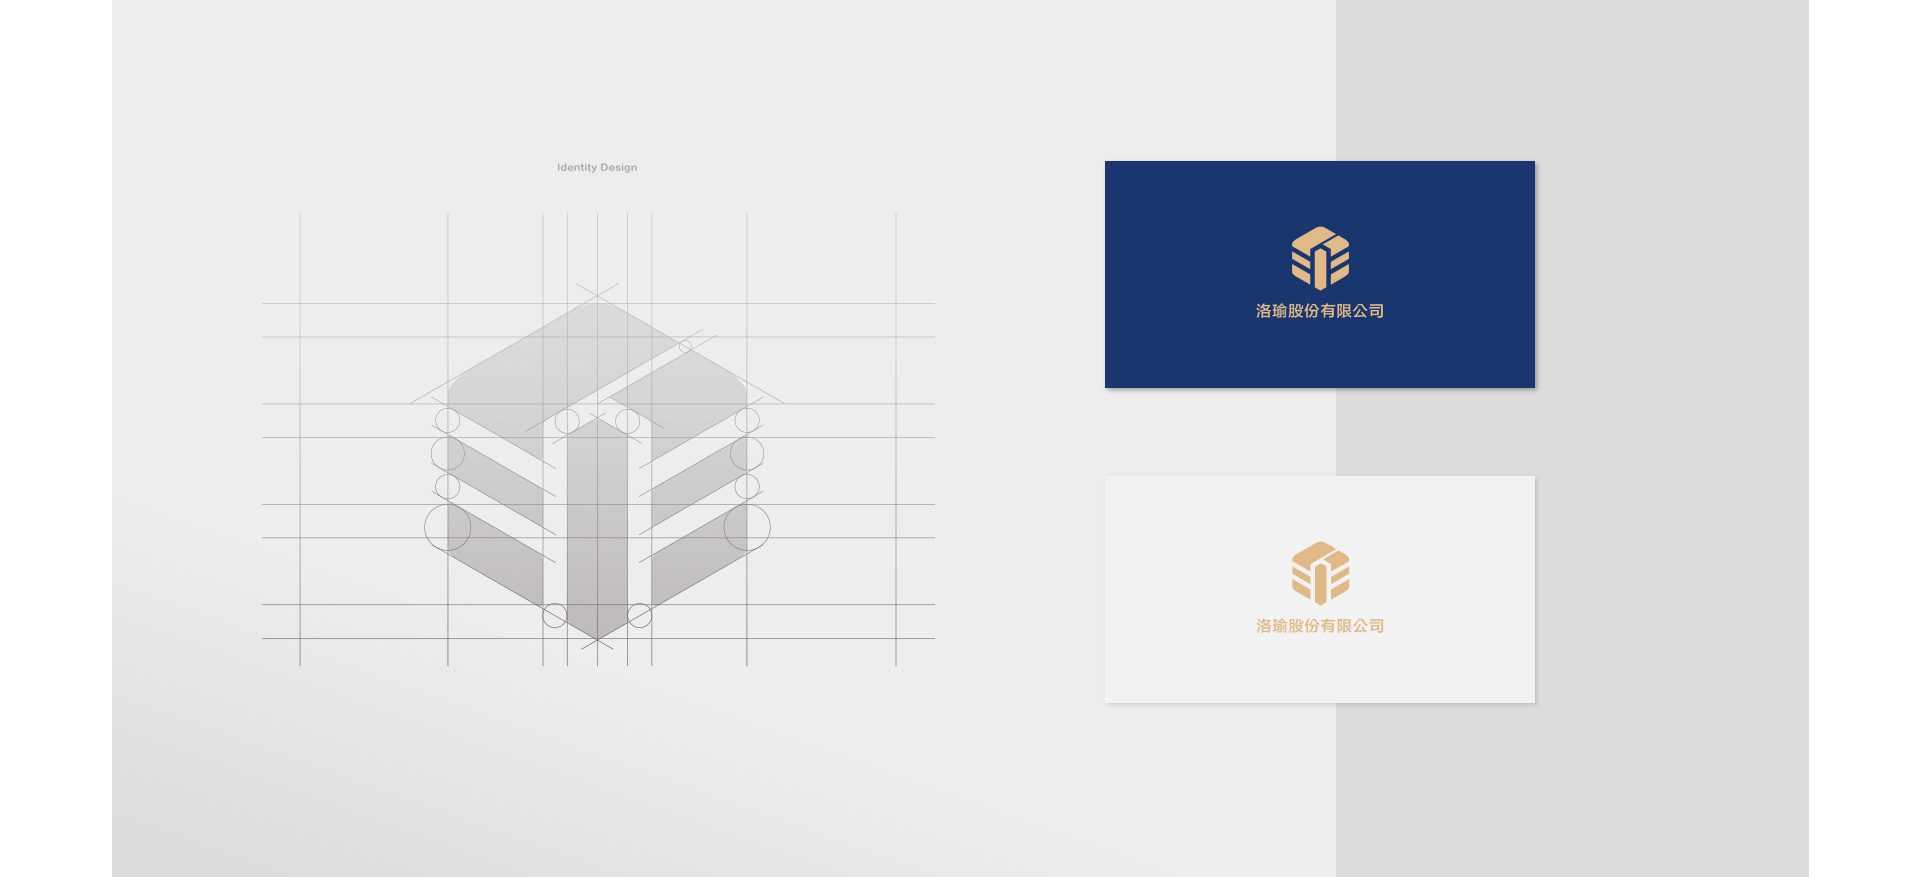 企業Logo延伸視覺創意規劃設計名片